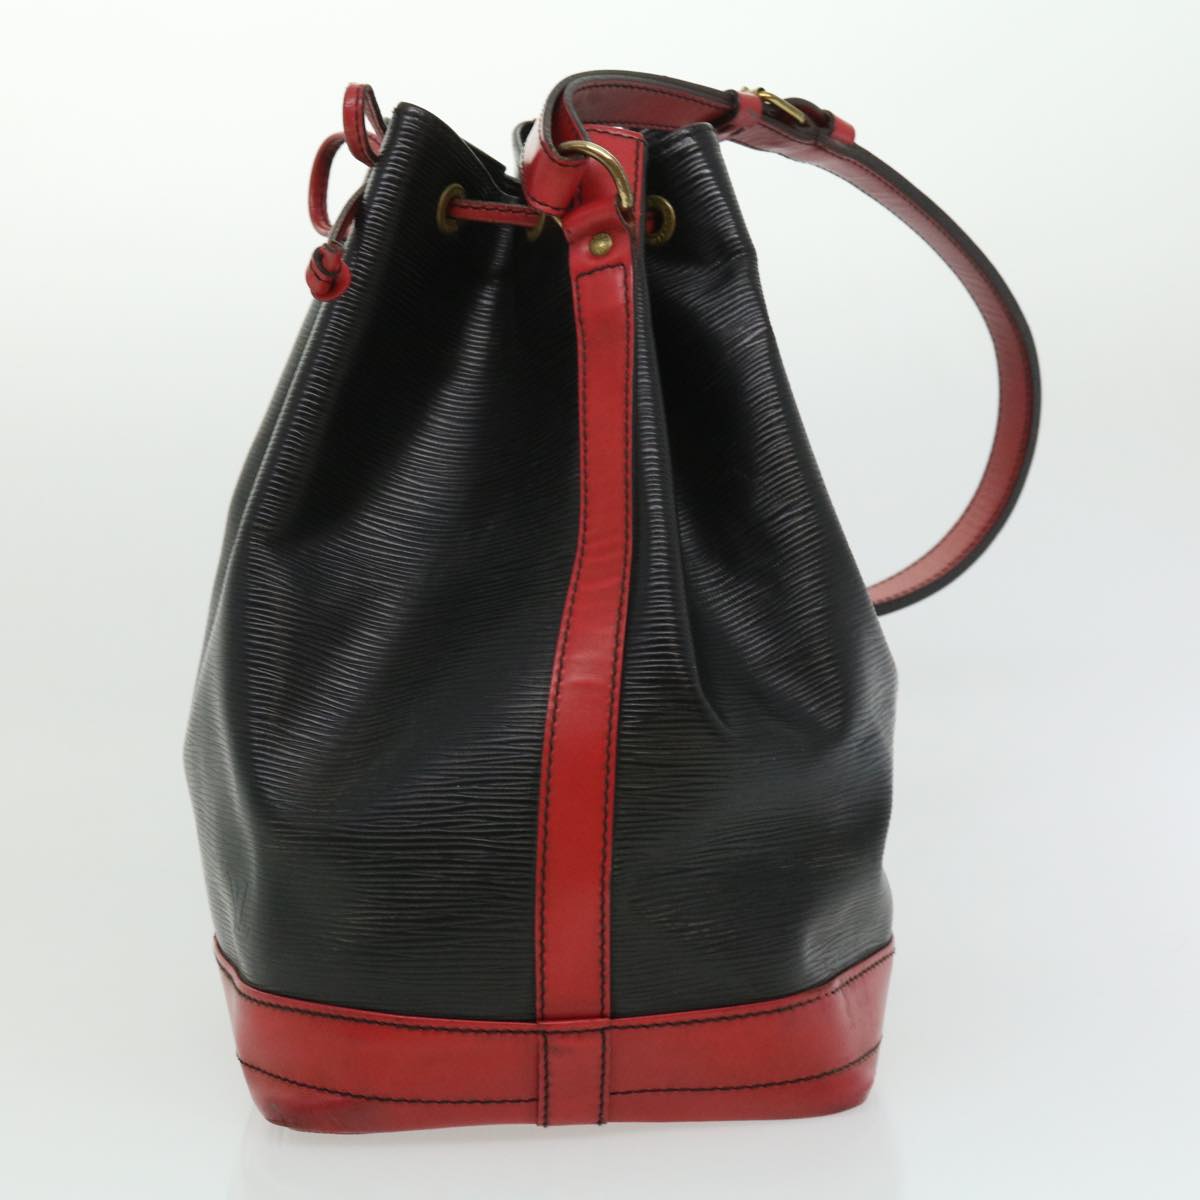 LOUIS VUITTON Epi By color Noe Shoulder Bag Black Red M44017 LV Auth 31450